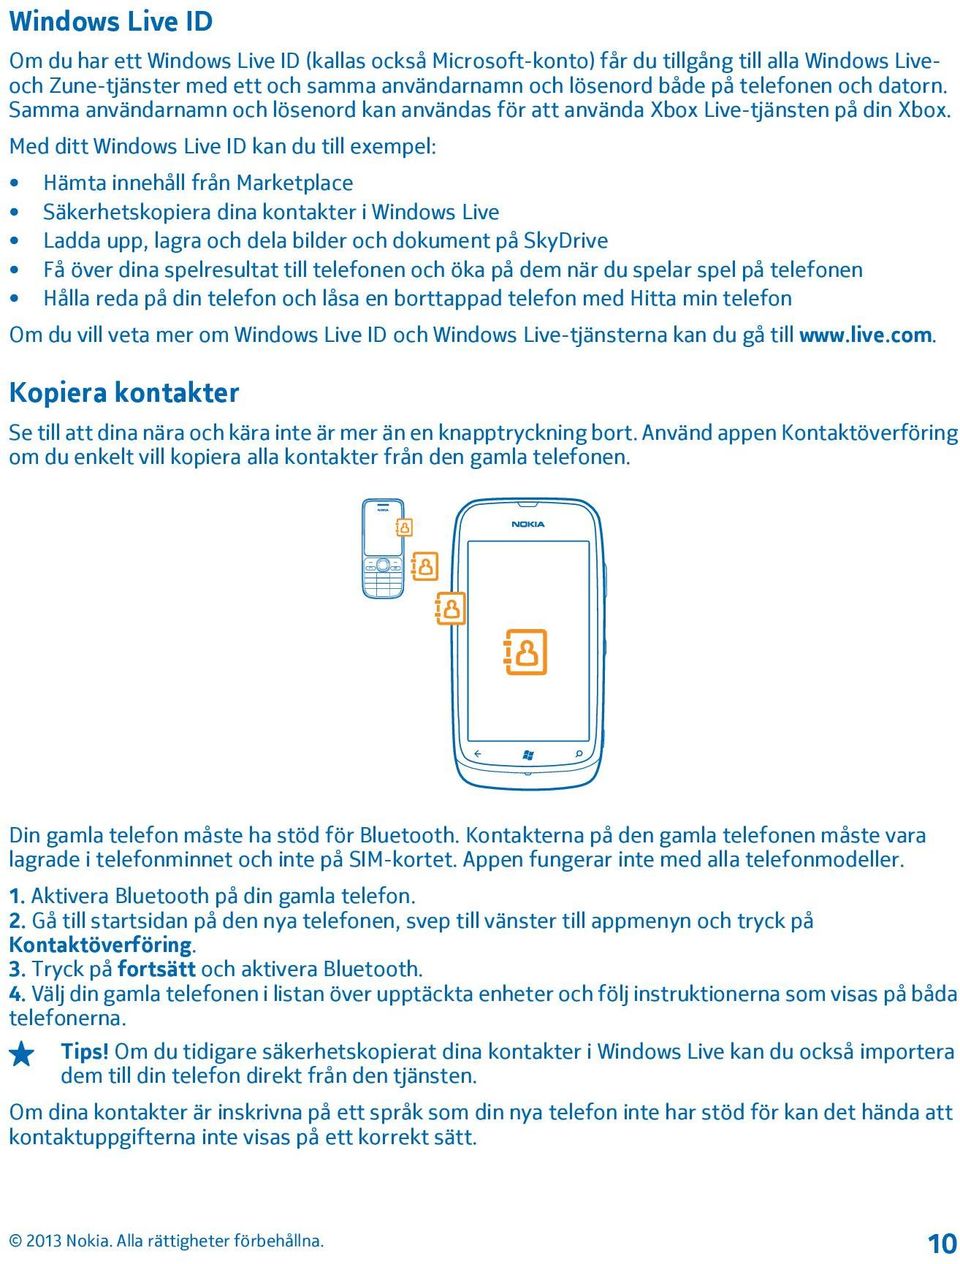 Med ditt Windows Live ID kan du till exempel: Hämta innehåll från Marketplace Säkerhetskopiera dina kontakter i Windows Live Ladda upp, lagra och dela bilder och dokument på SkyDrive Få över dina